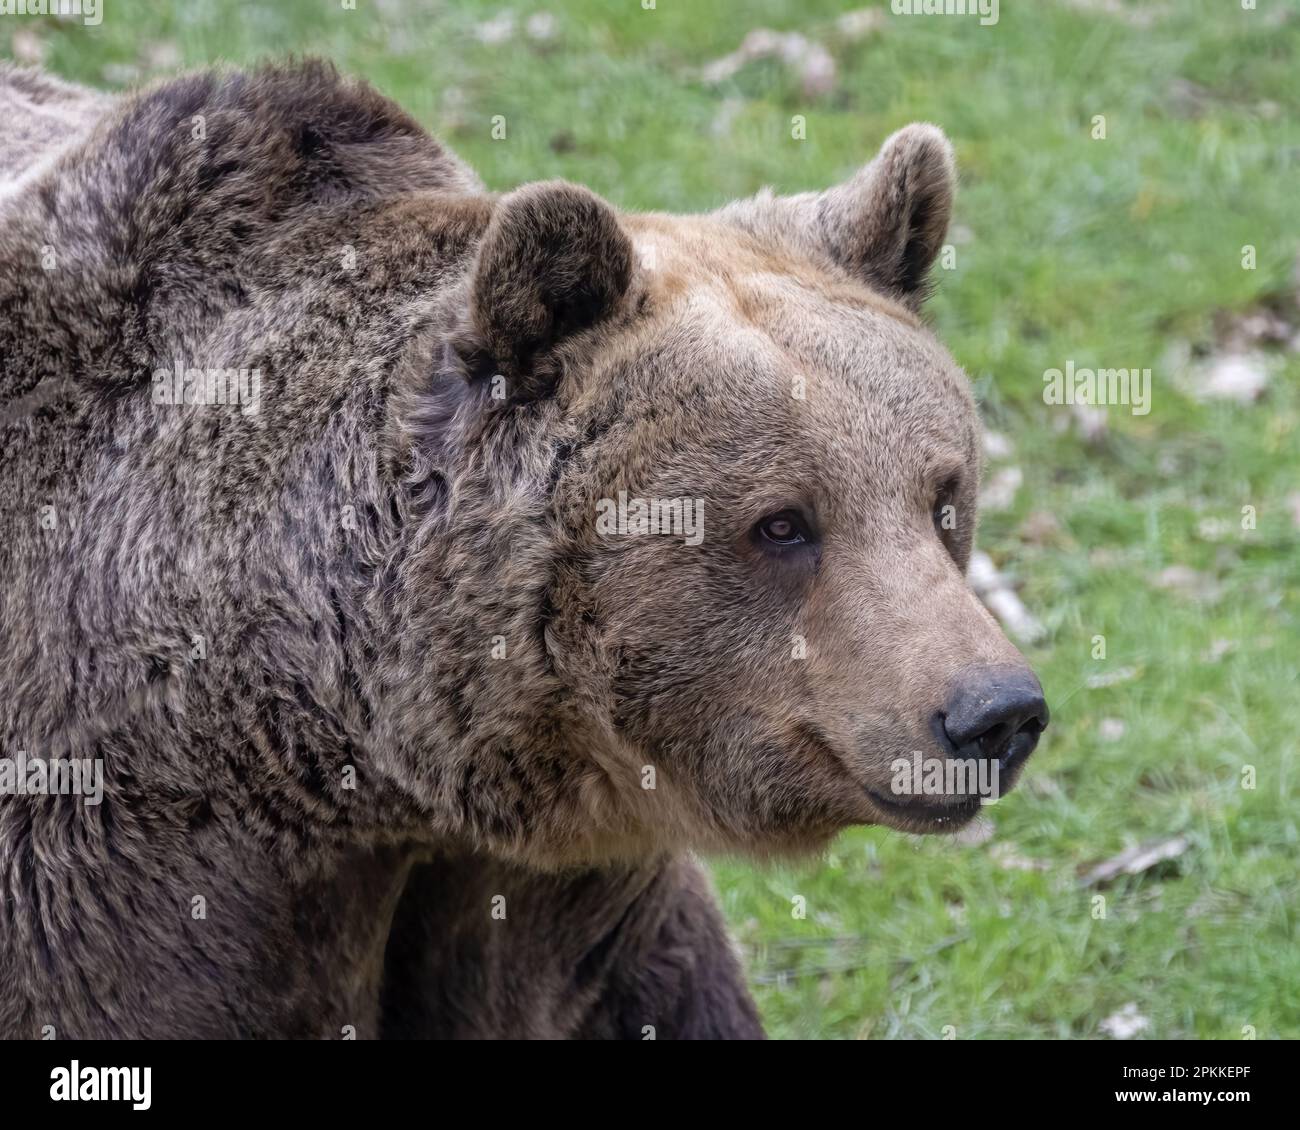 Grizzly bear at Wildwood, Kent, UK Stock Photo